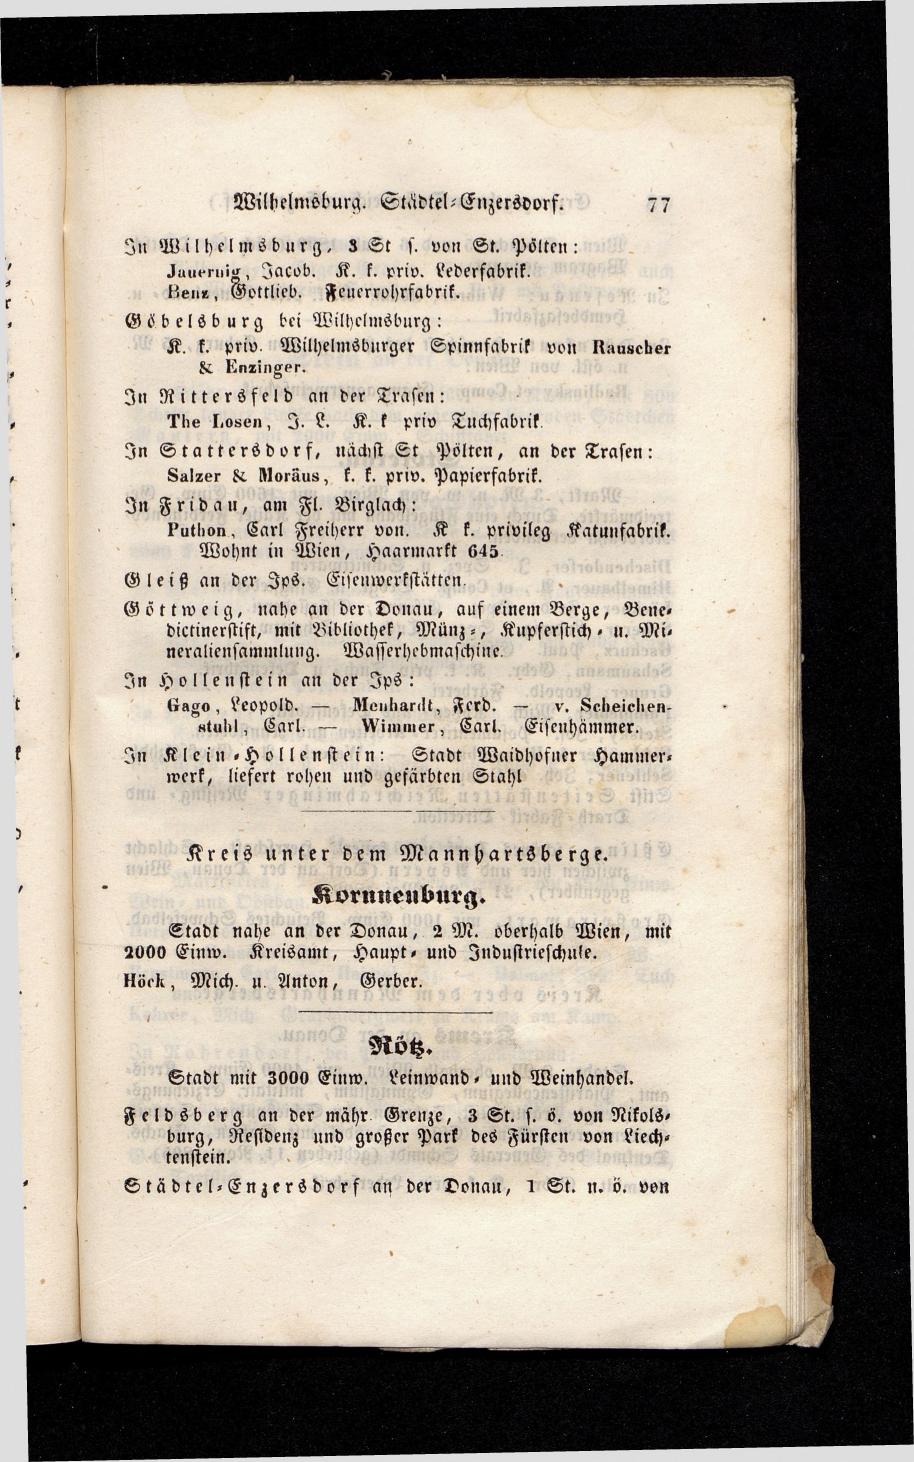 Grosses Adressbuch der Kaufleute. No. 13. Oesterreich ober u. unter der Enns 1844 - Seite 81